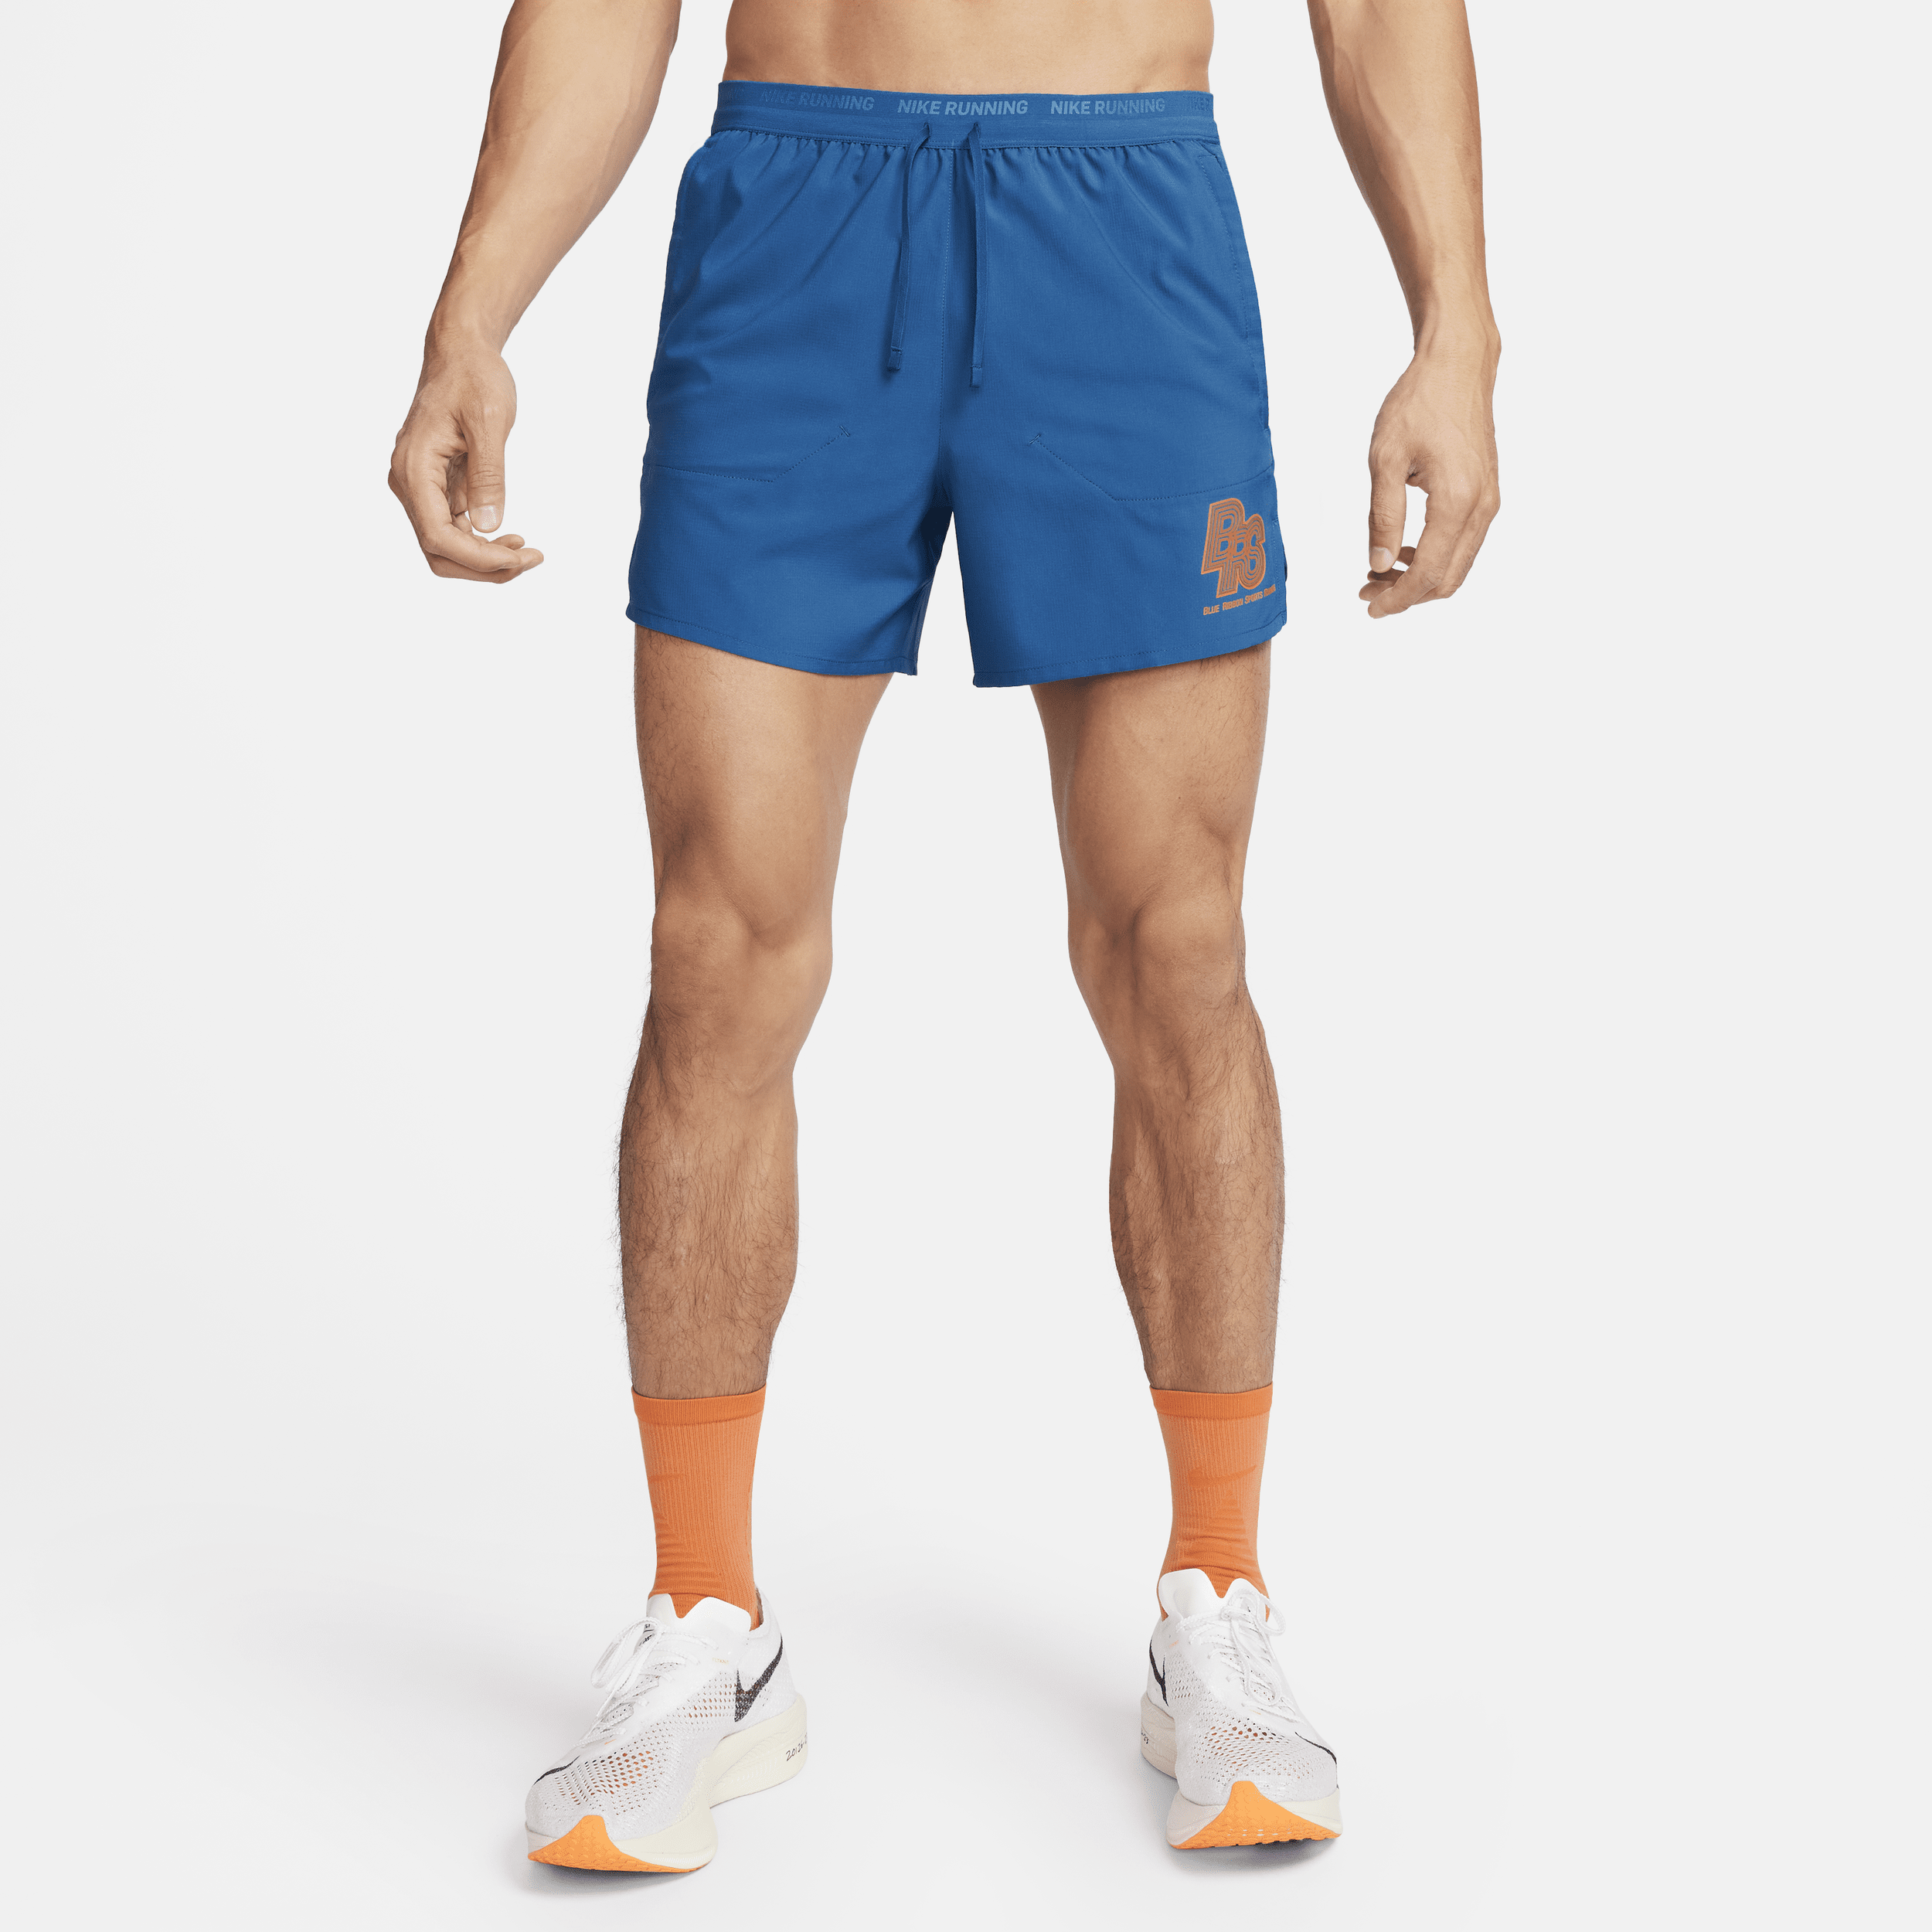 Nike Running Energy Stride Pantalón corto de running de 13 cm con malla interior - Hombre - Azul